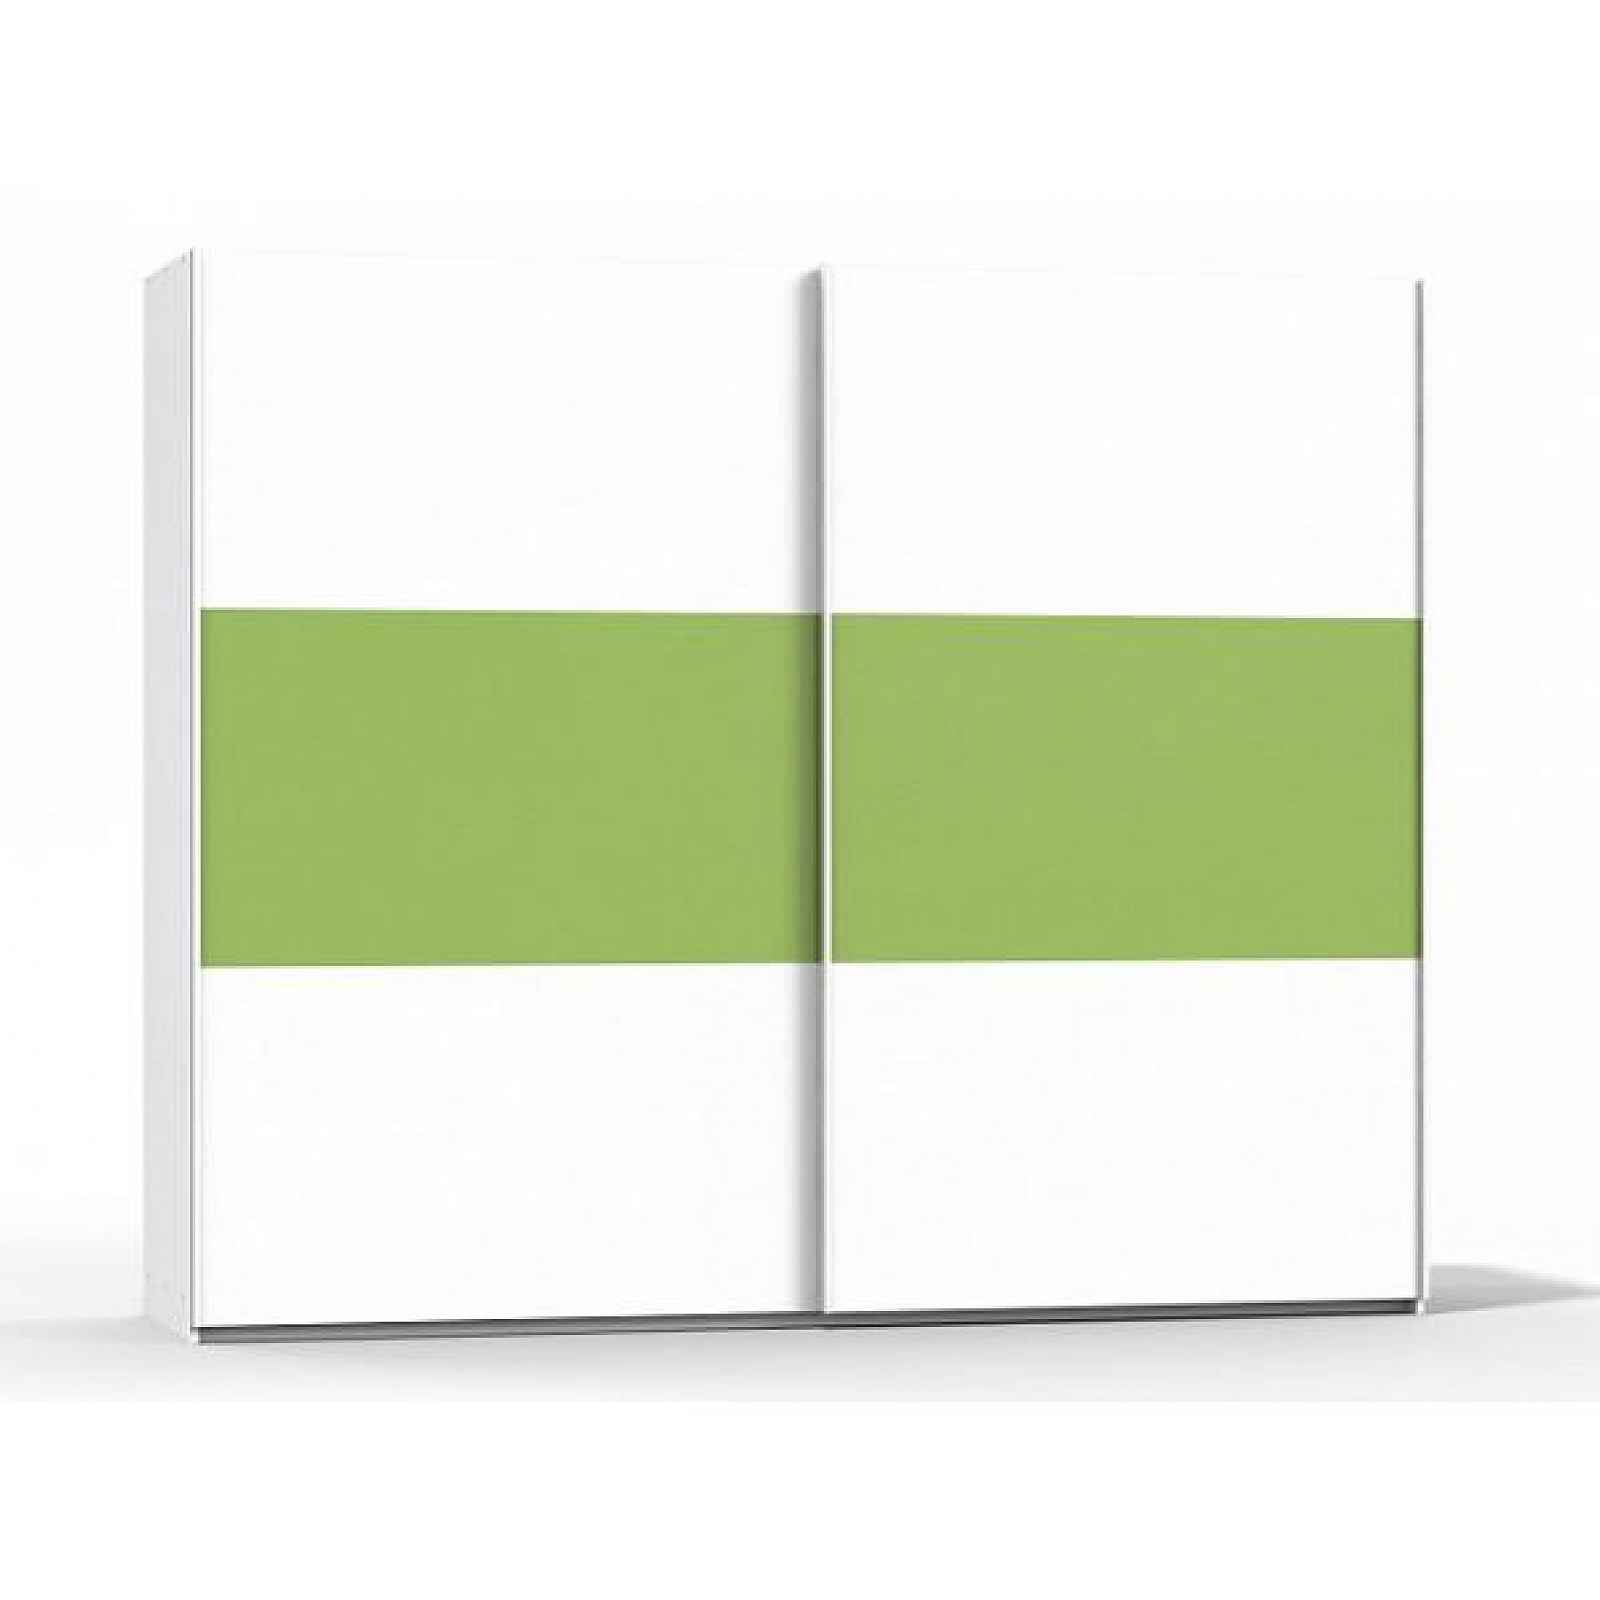 Šatní skříň Rea Houston 3 bílá-zelená